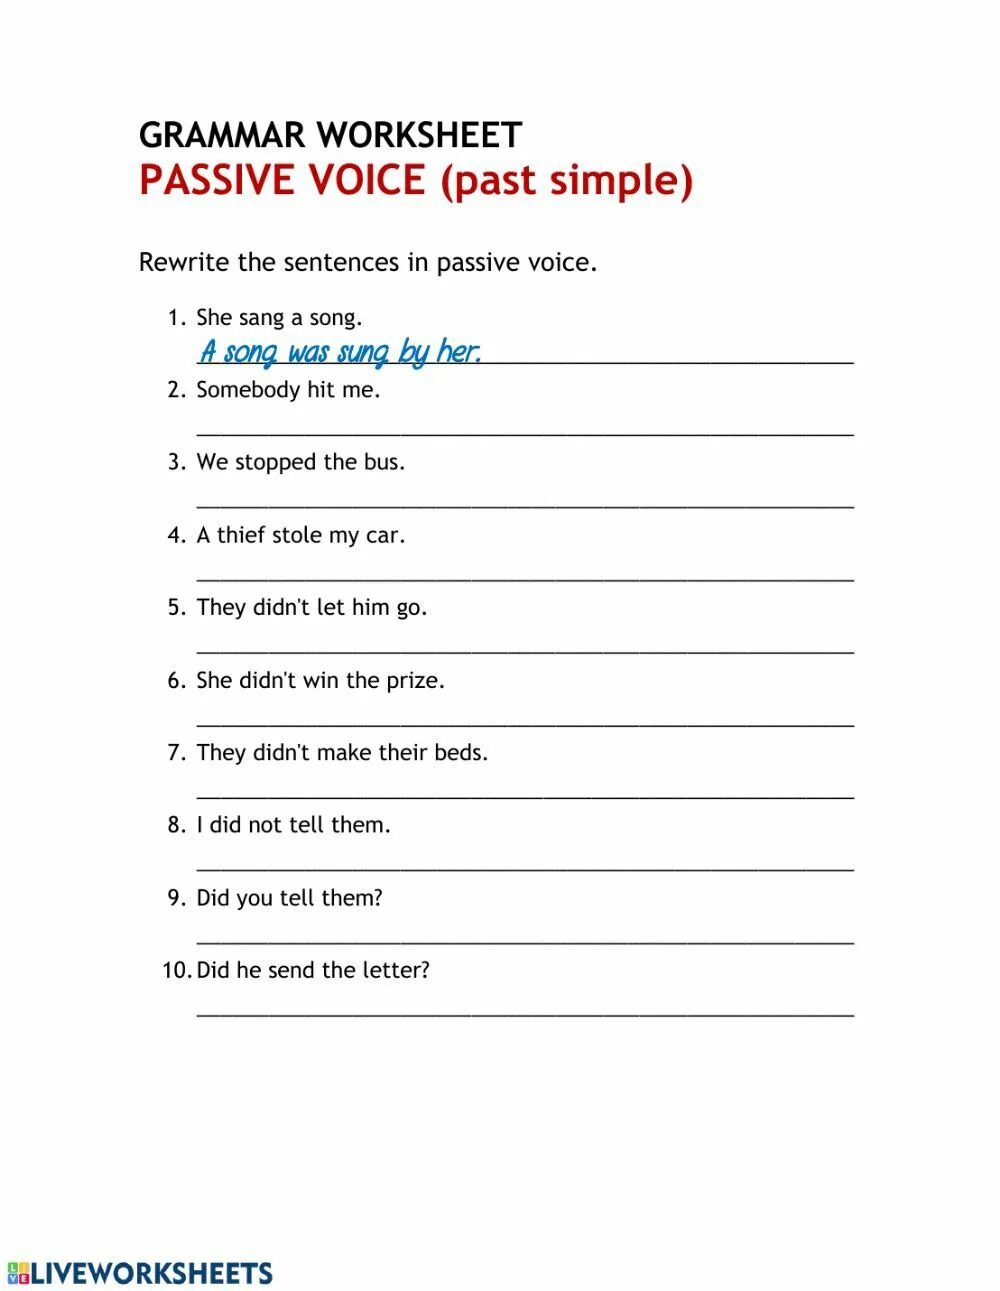 Passive Voice Worksheets. Present Passive Voice Worksheets. Past Passive Voice. Пассивный залог Worksheets. Present past passive worksheets